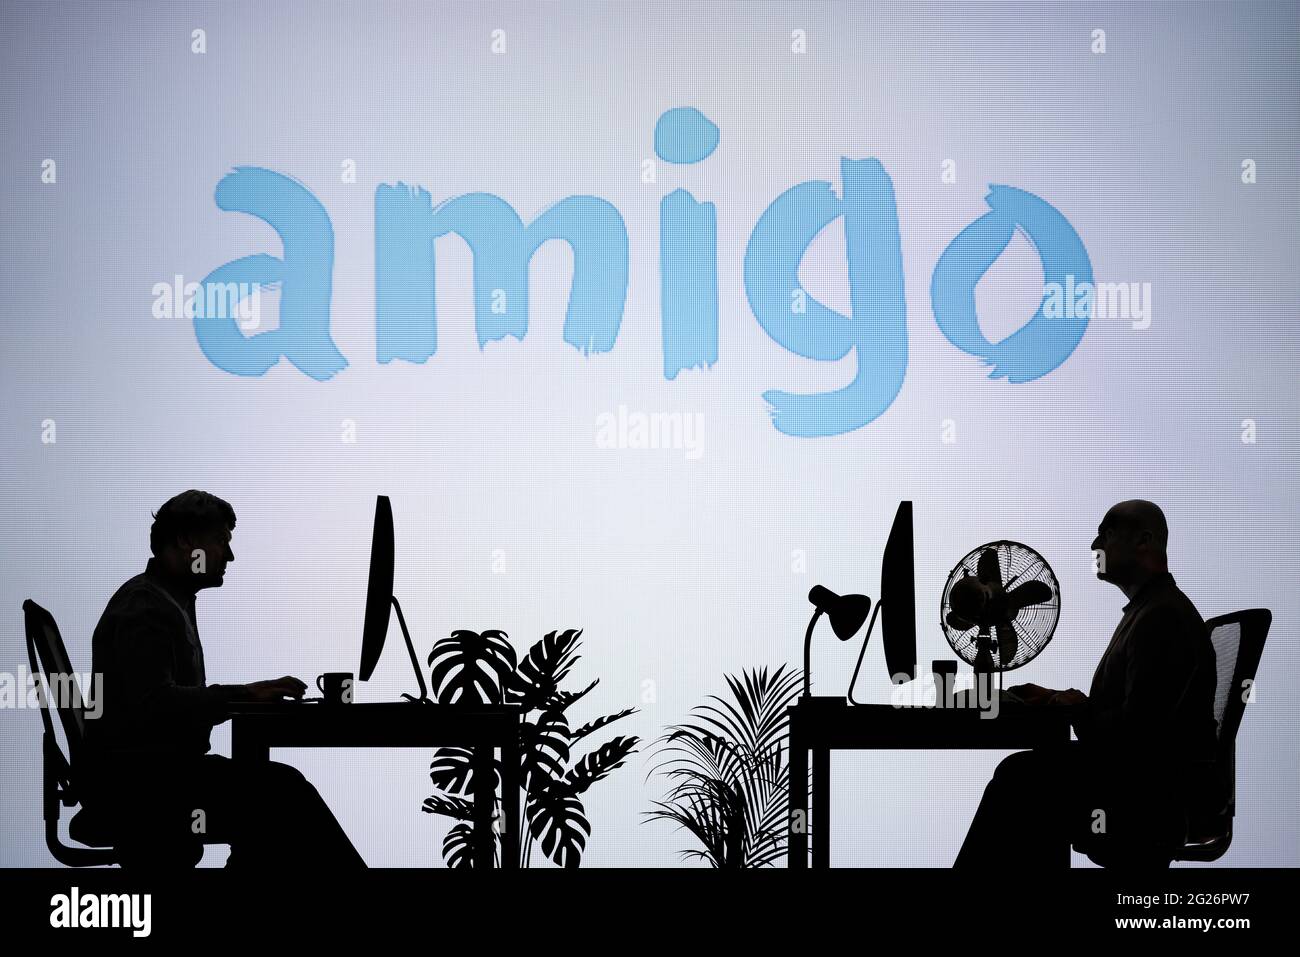 Das Logo der Amigo-Darlehen ist auf einem LED-Bildschirm im Hintergrund zu sehen, während zwei silhouettierte Menschen in einer Büroumgebung arbeiten (nur redaktionelle Verwendung) Stockfoto